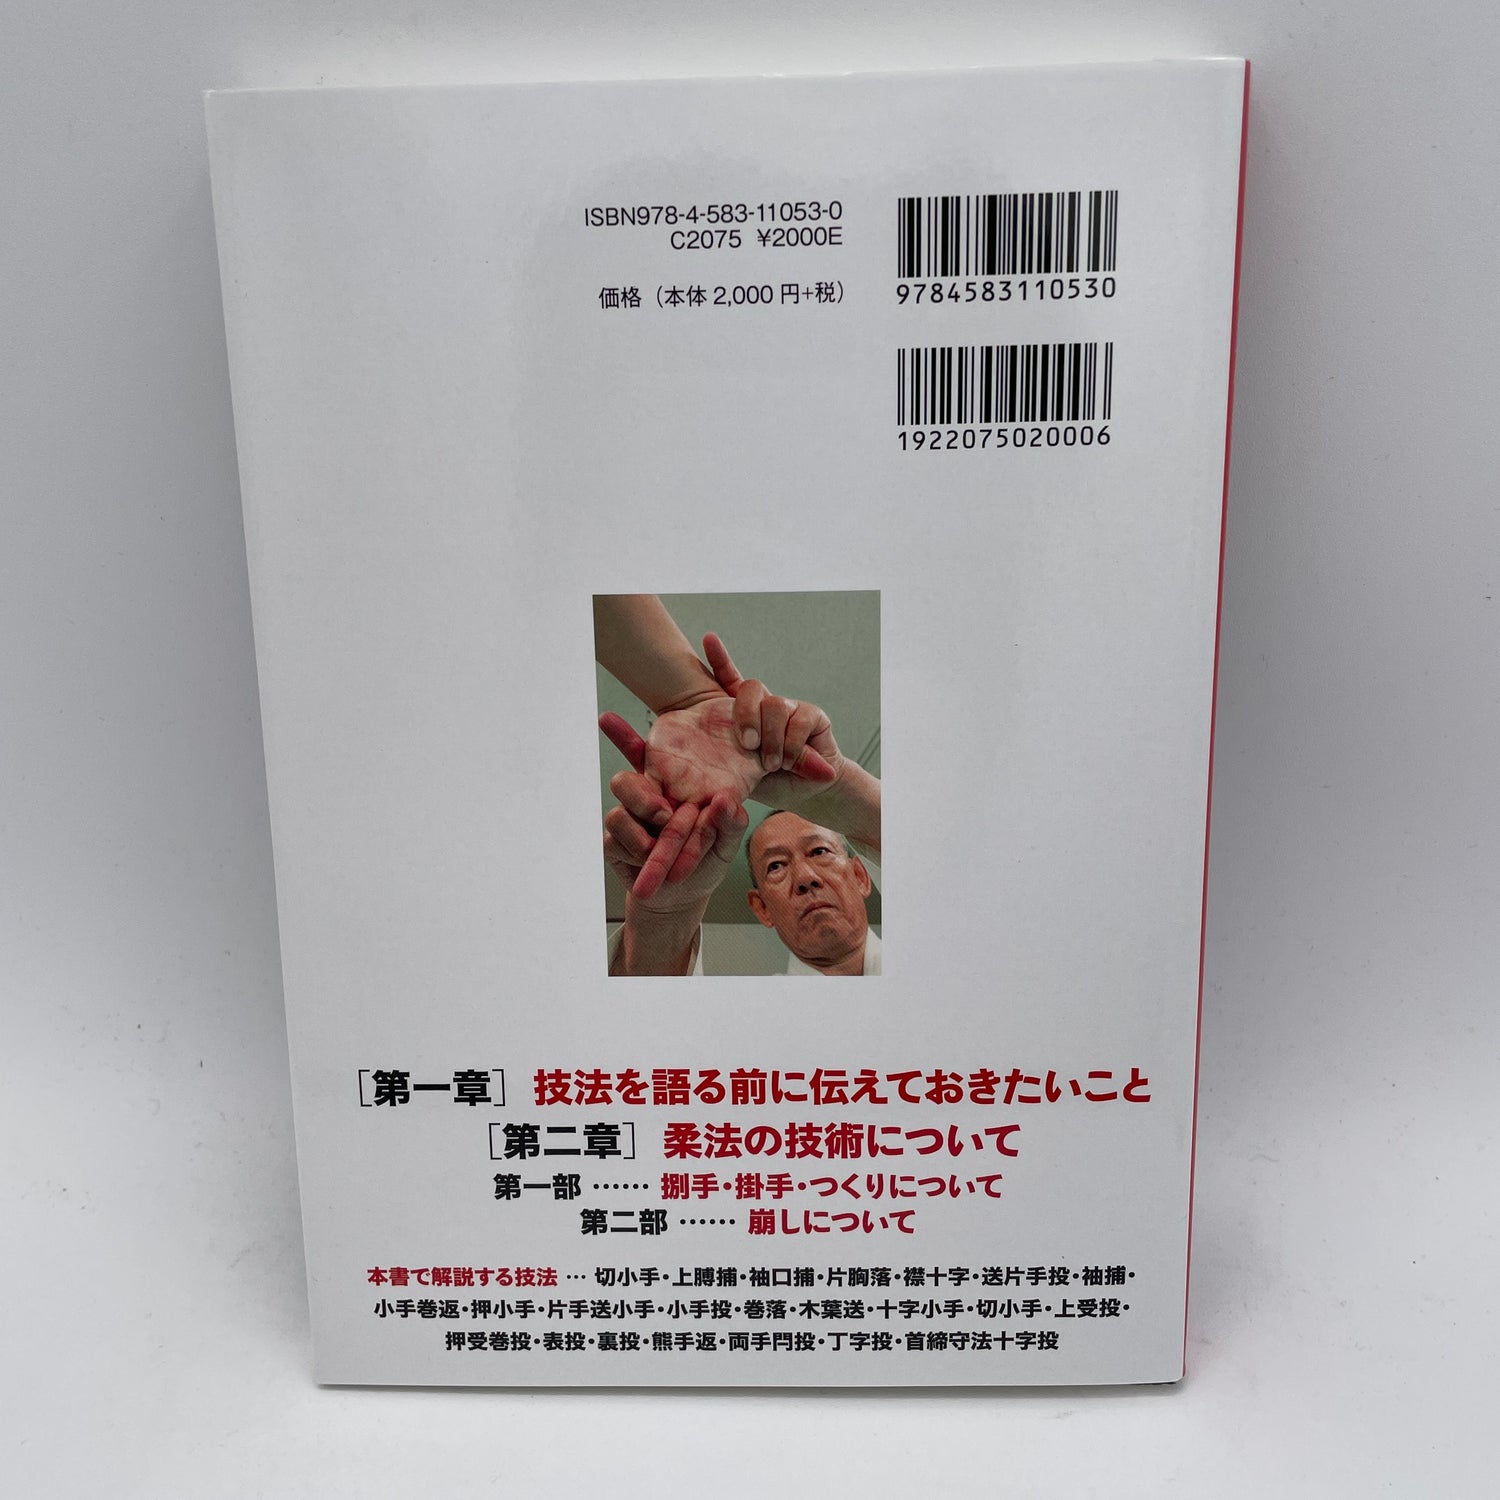 少林寺拳法柔法の心得本＆DVD